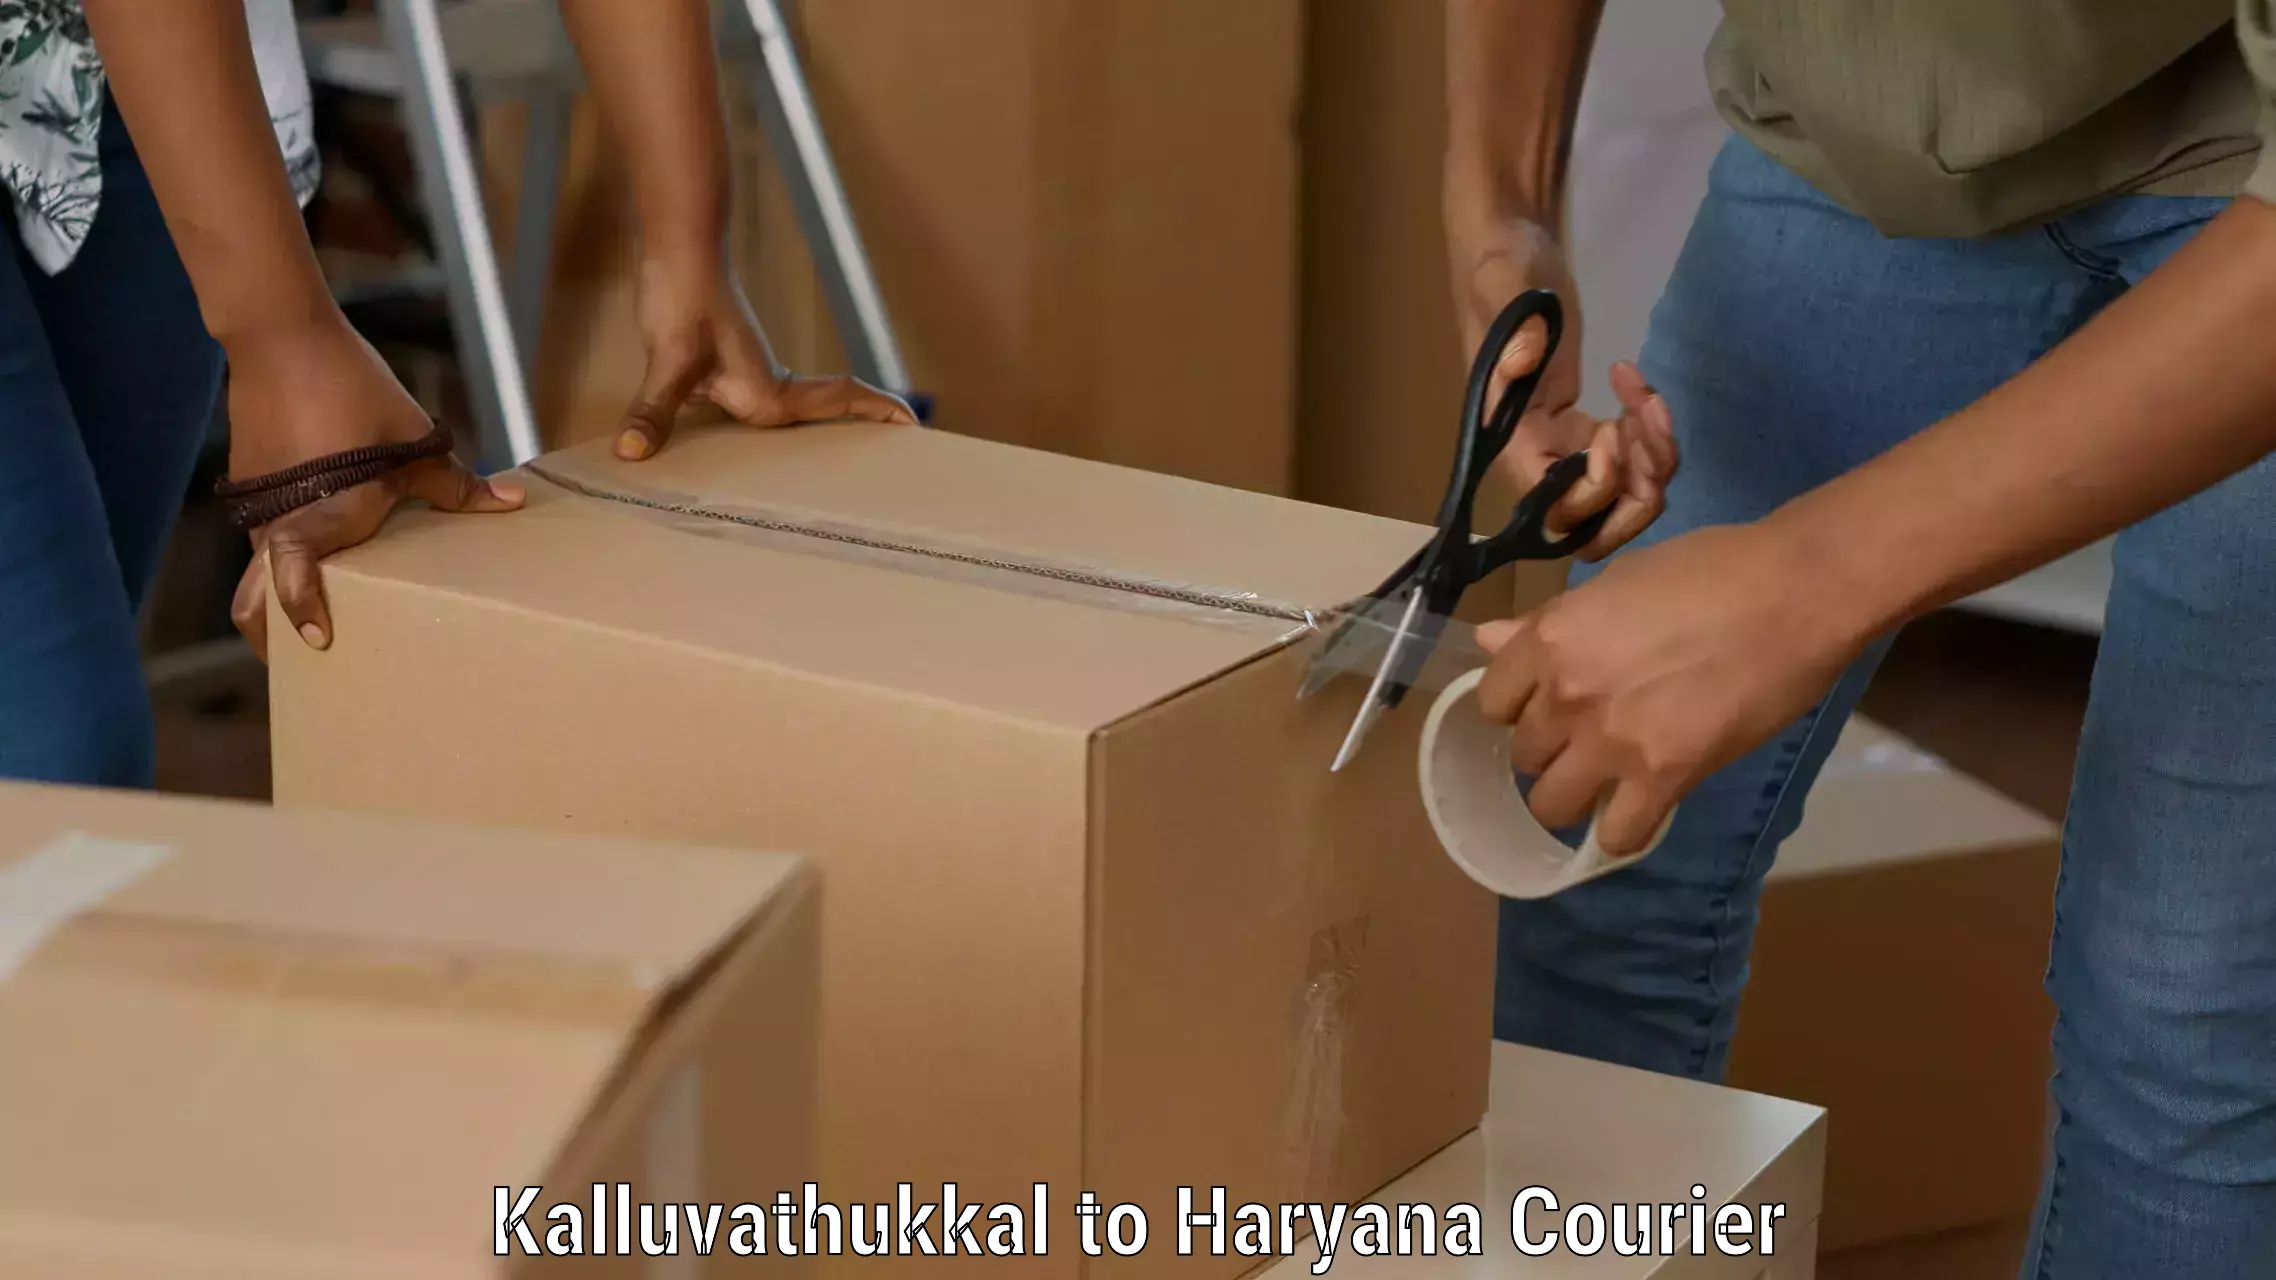 Full-service courier options in Kalluvathukkal to Gohana